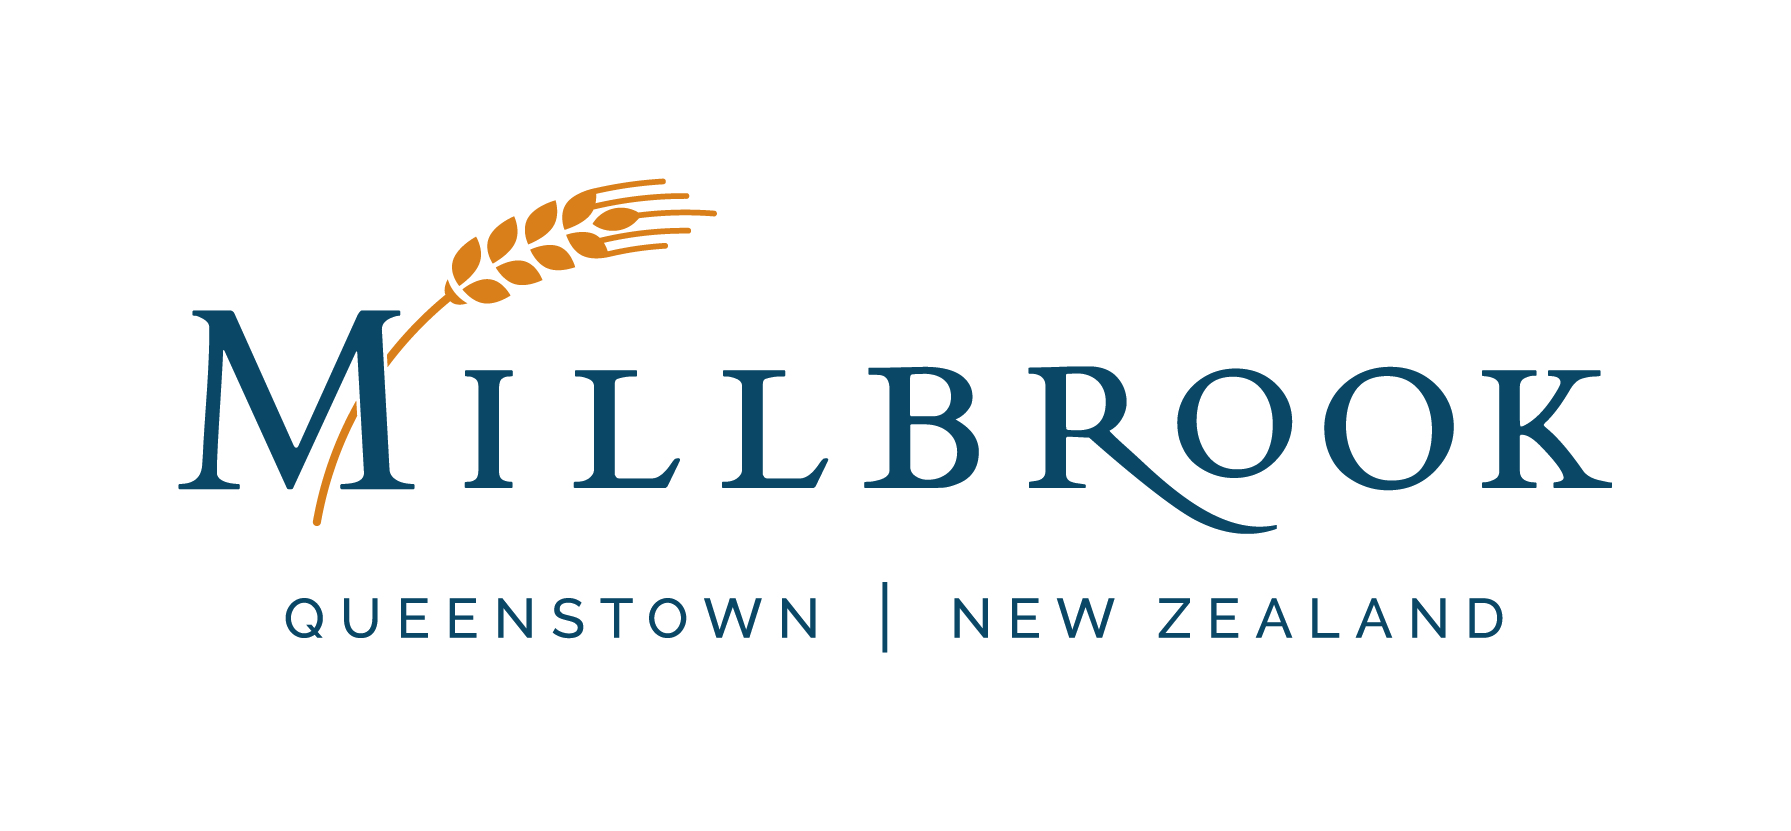 Millbrook QT NZ CMYK